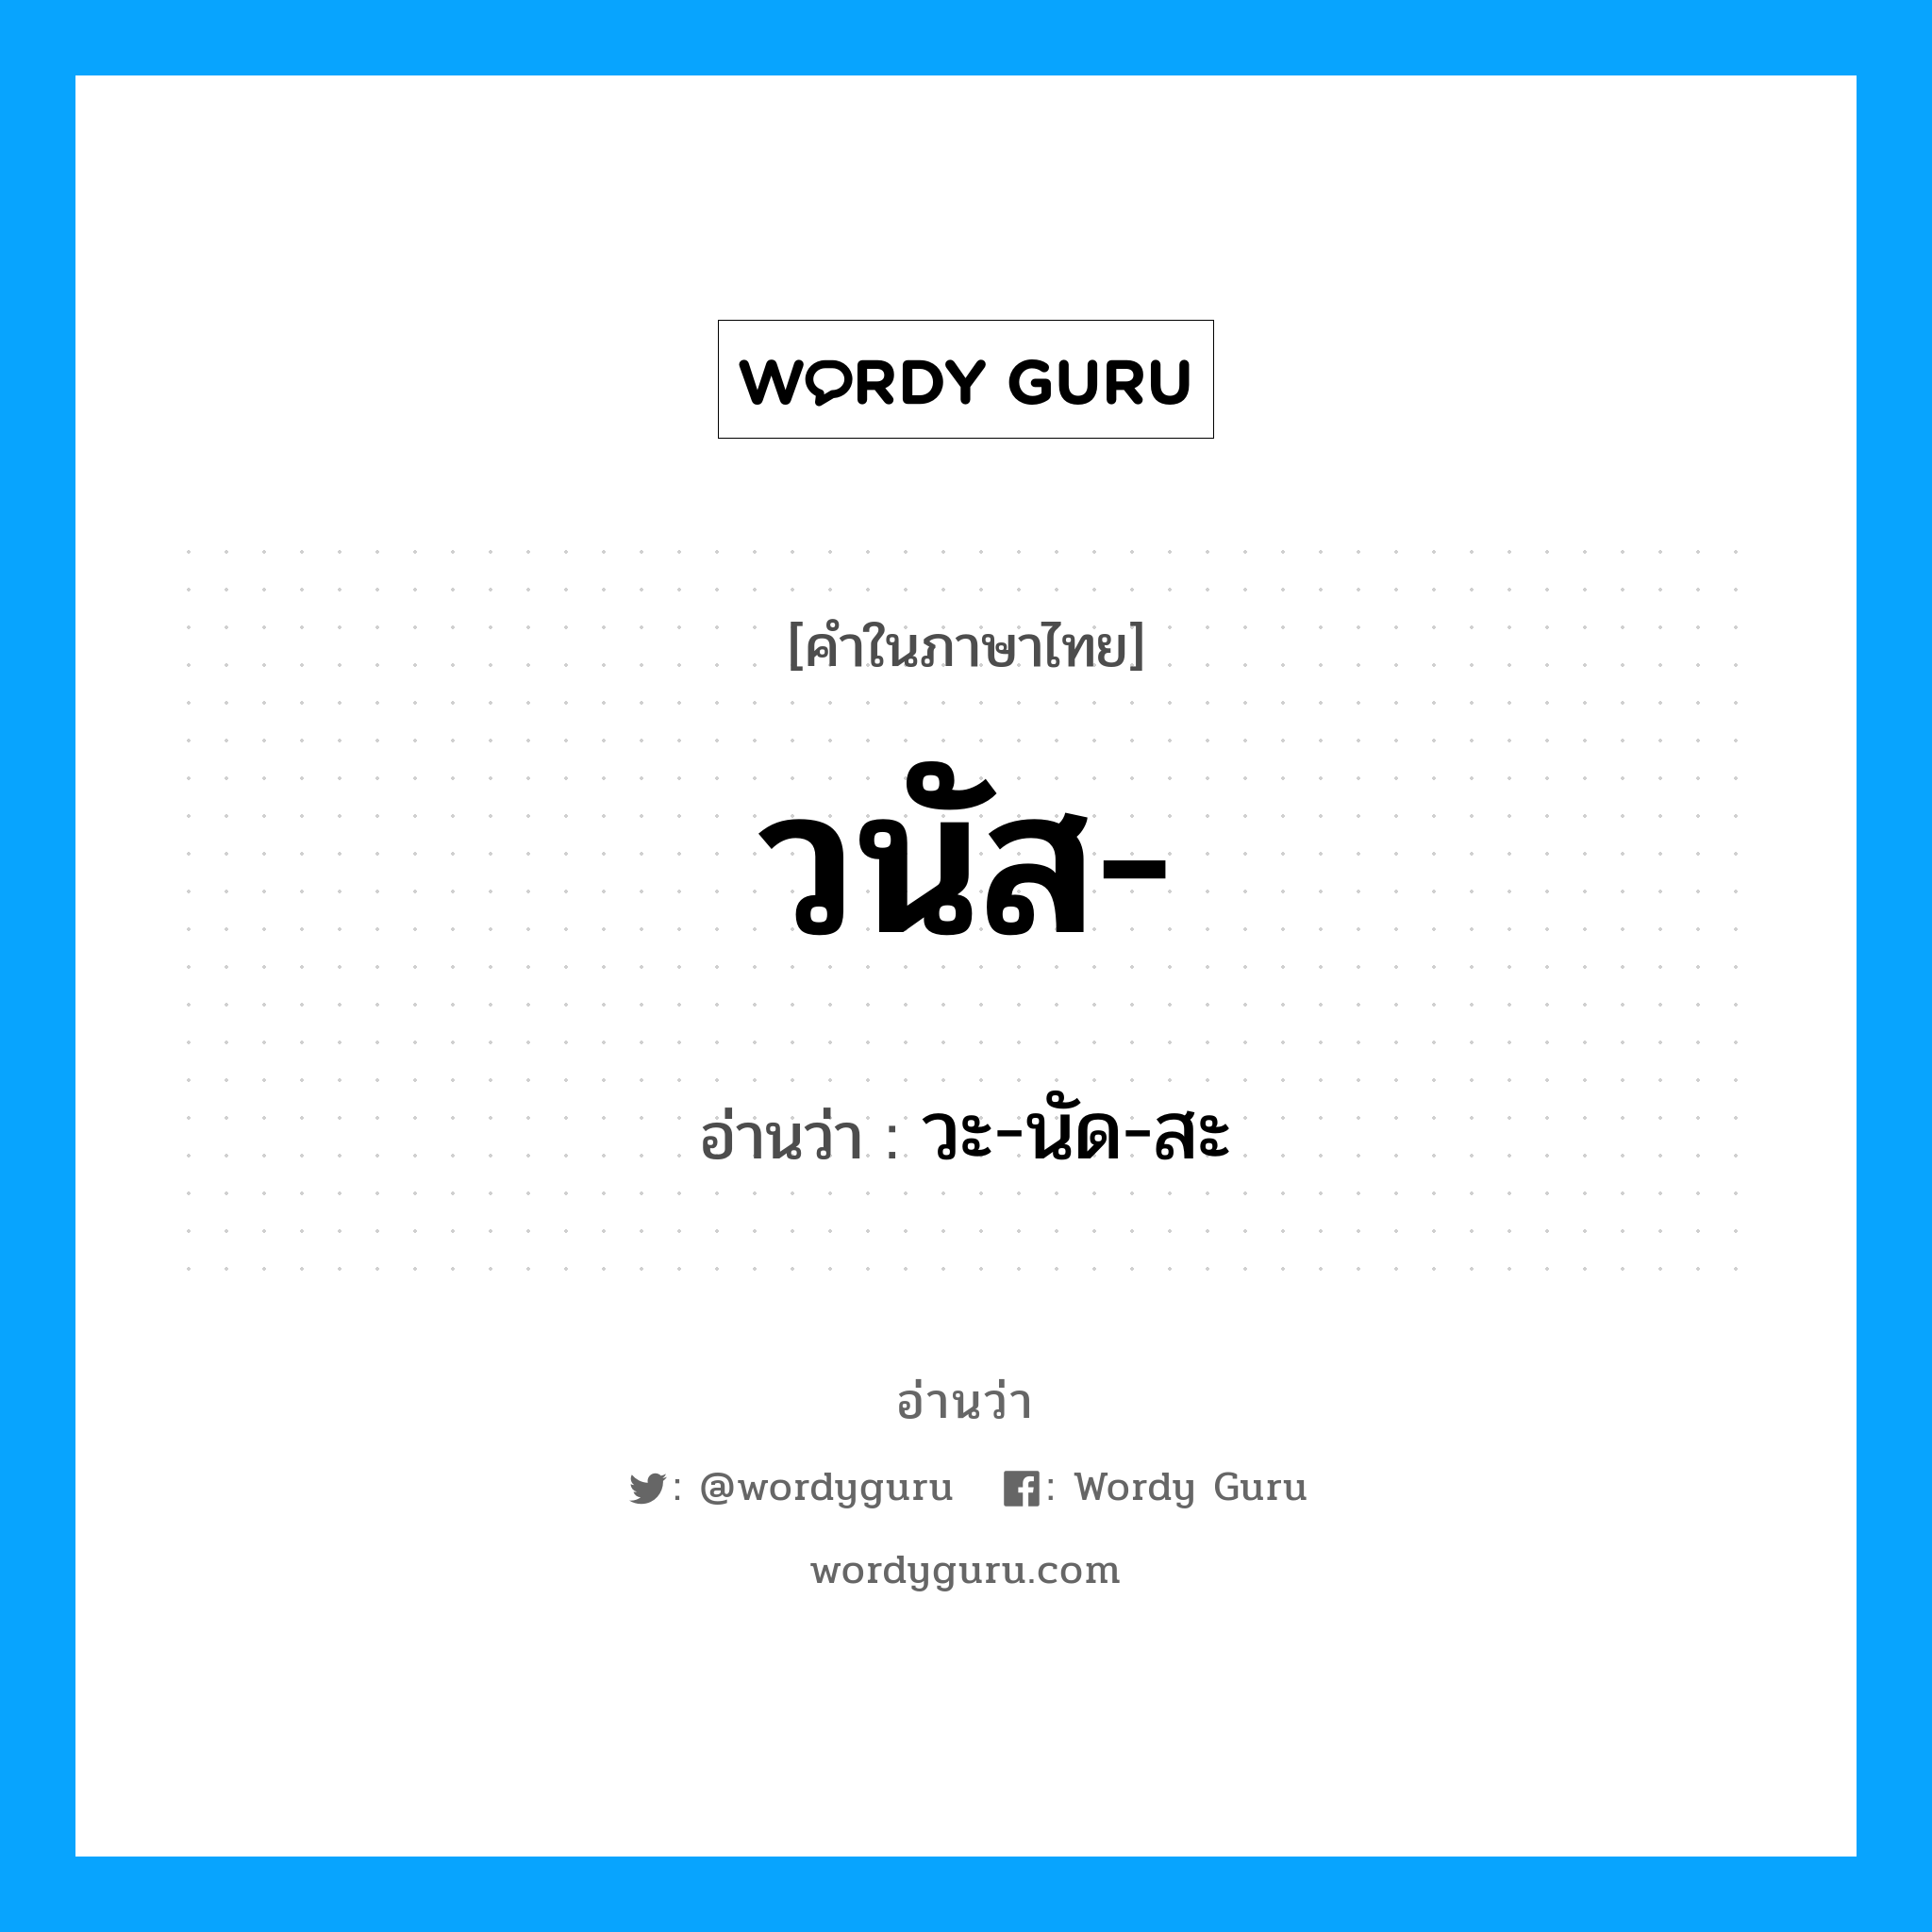 วะ-นัด-สะ เป็นคำอ่านของคำไหน?, คำในภาษาไทย วะ-นัด-สะ อ่านว่า วนัส-